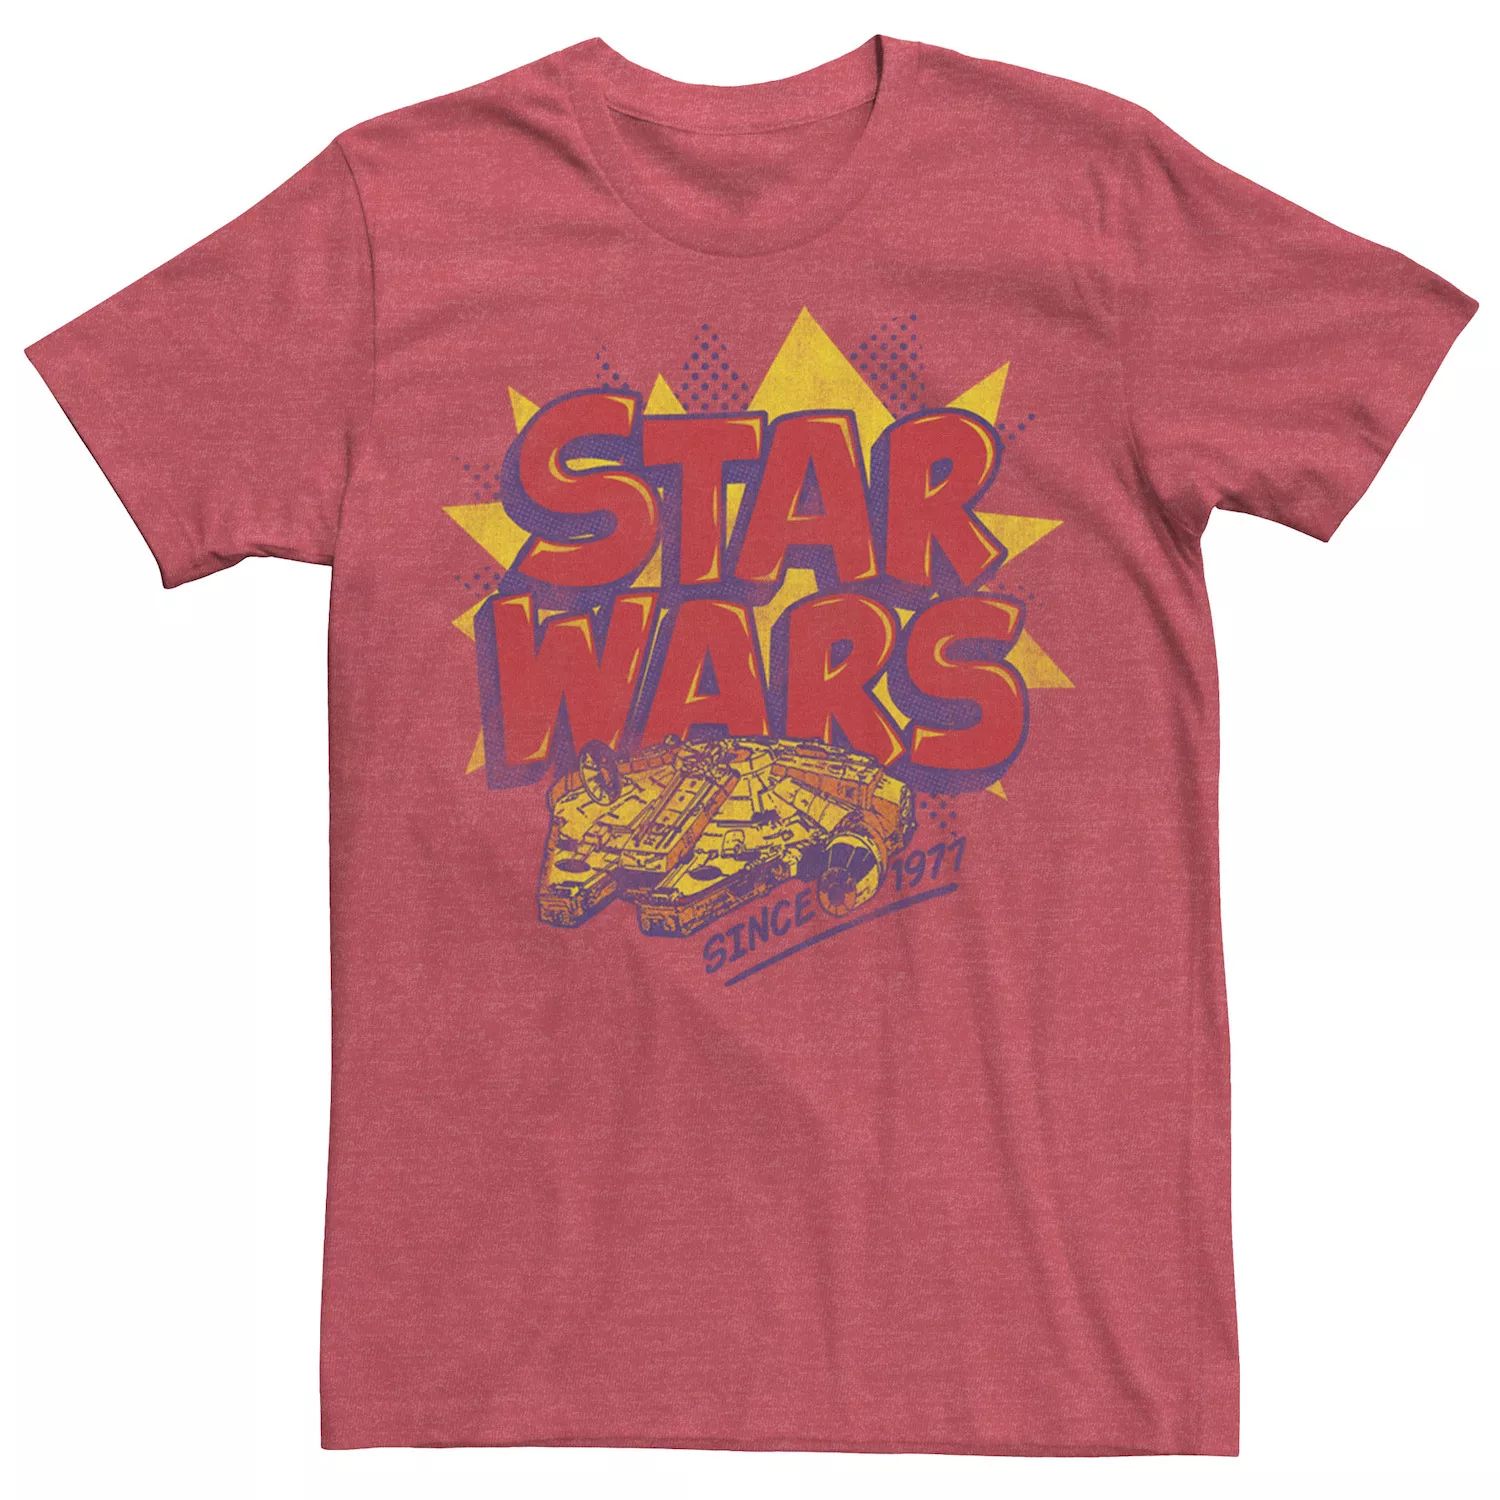 Мужская футболка с логотипом комиксов «Звездные войны: Сокол тысячелетия» Star Wars мужская футболка с картой таро сокол тысячелетия звездные войны star wars